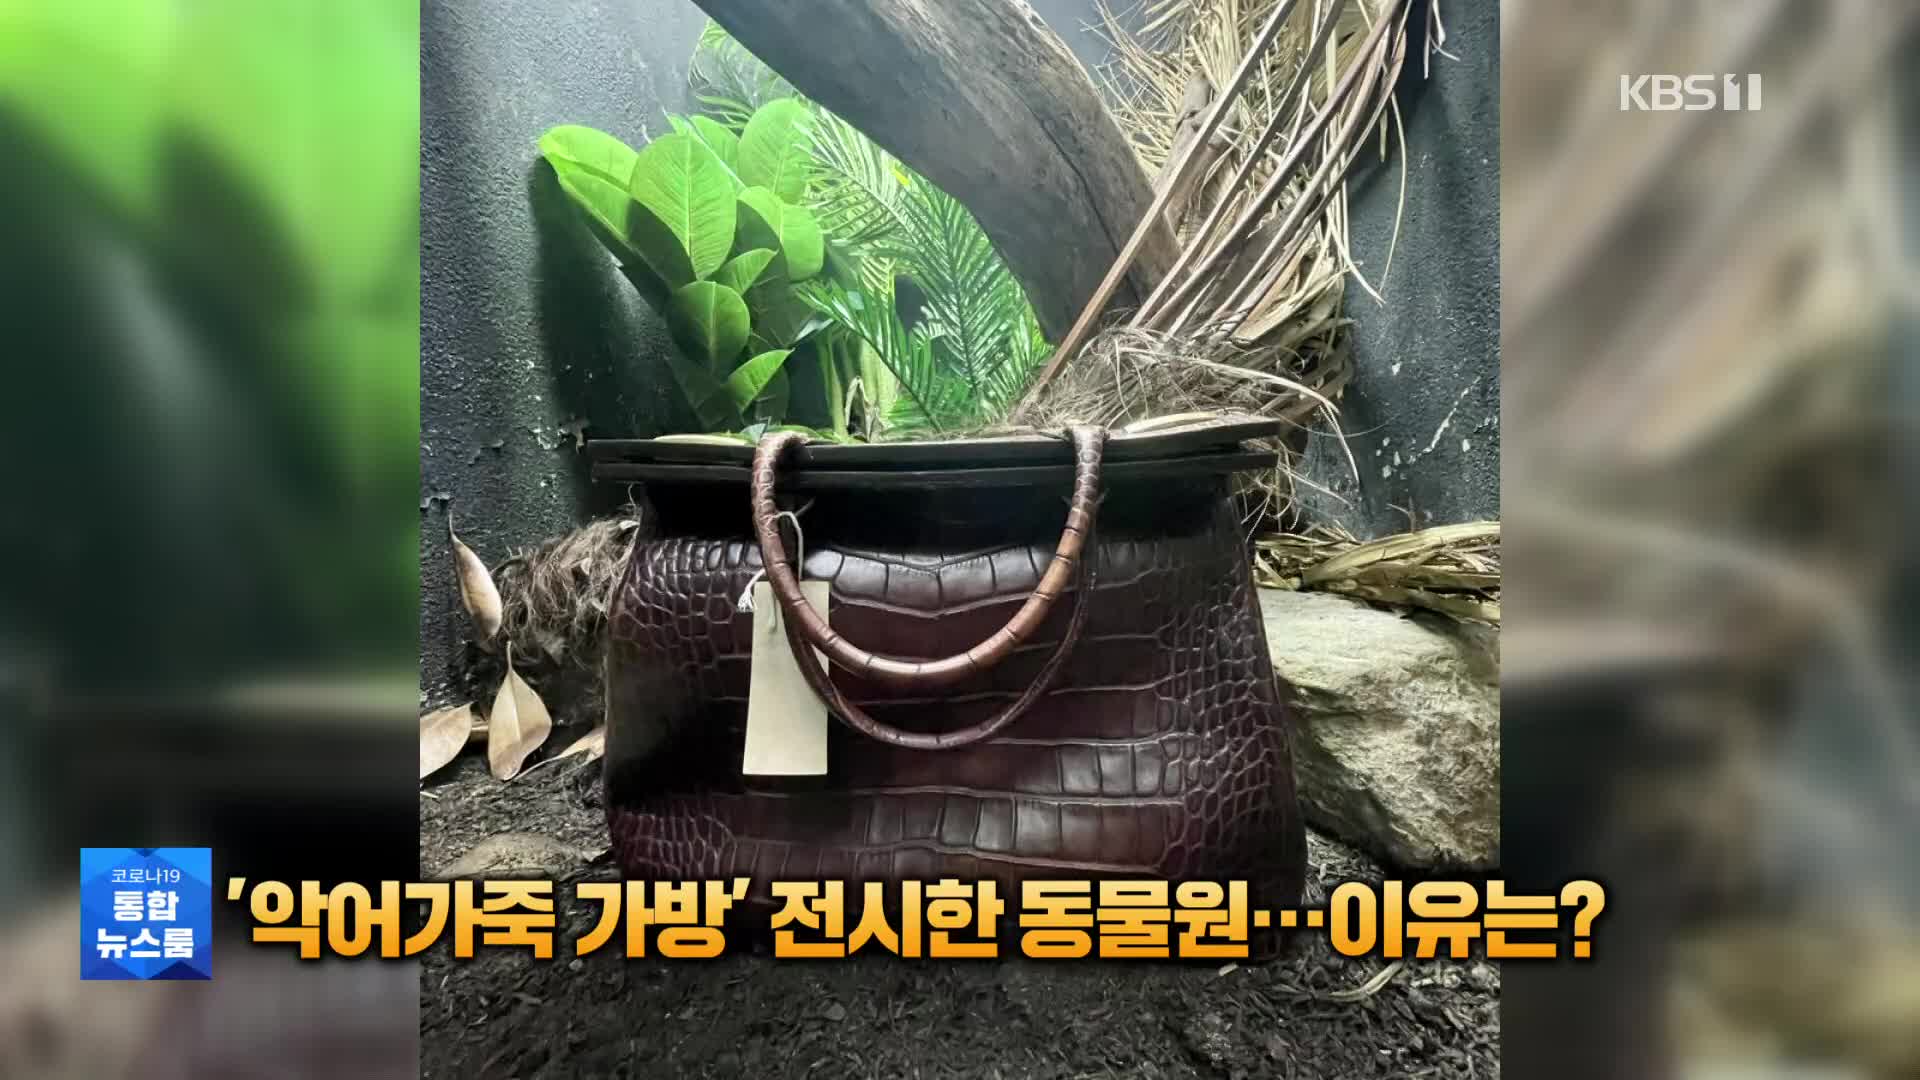 [톡톡 지구촌] ‘악어가죽 가방’ 전시한 동물원…이유는?